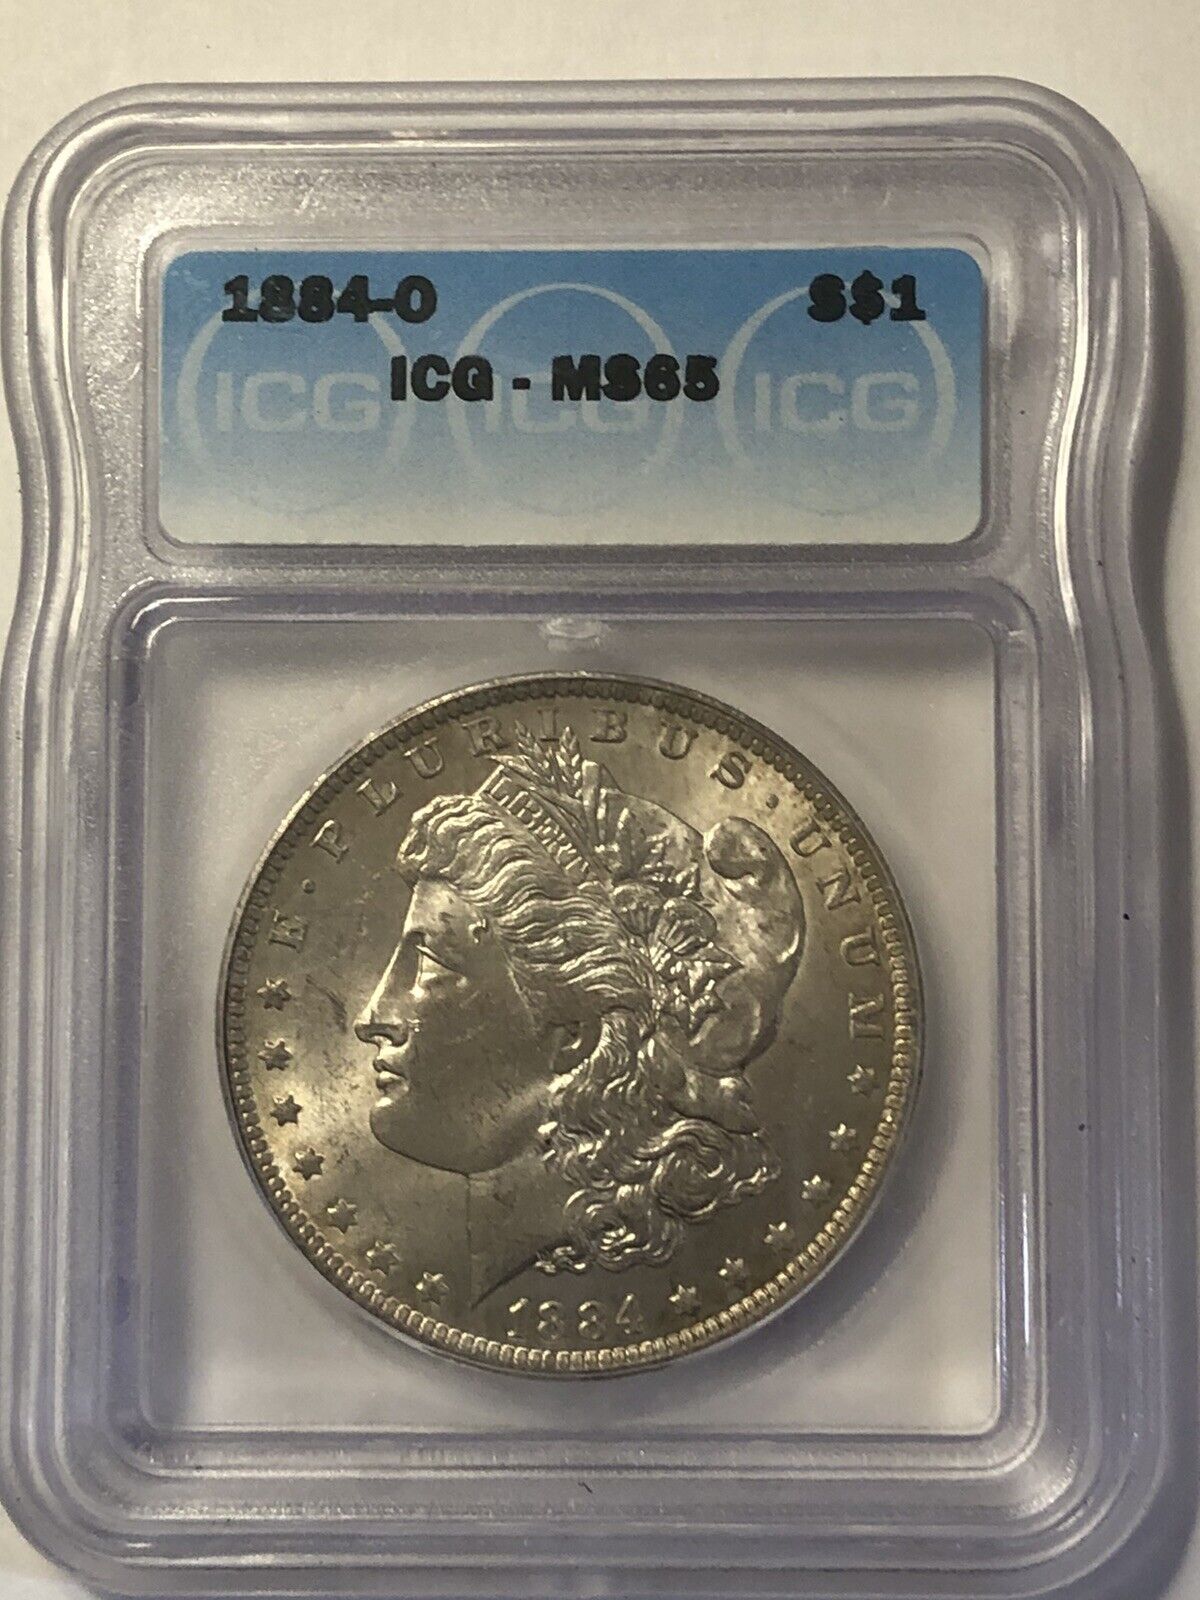 1884 o morgan silver dollar ms65, ICG MS-65, Awesome coin.